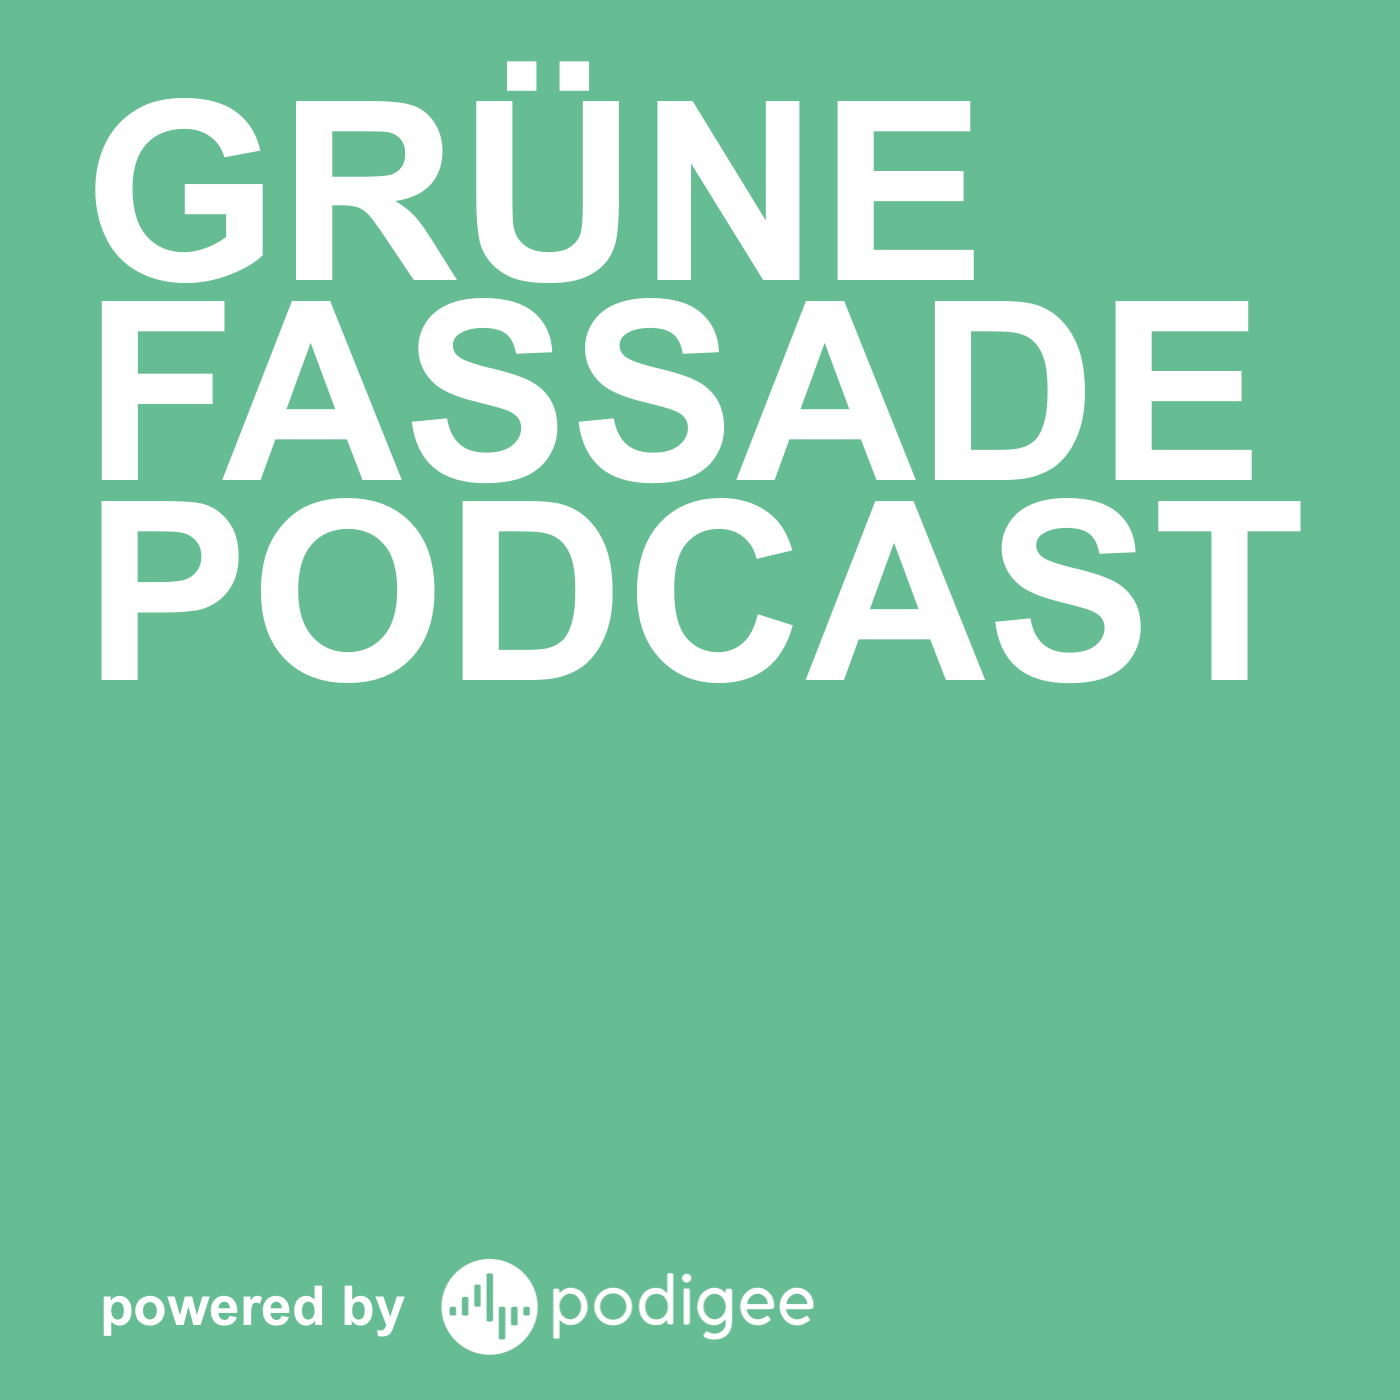 Grüne Fassade Podcast - alles über Mental Health